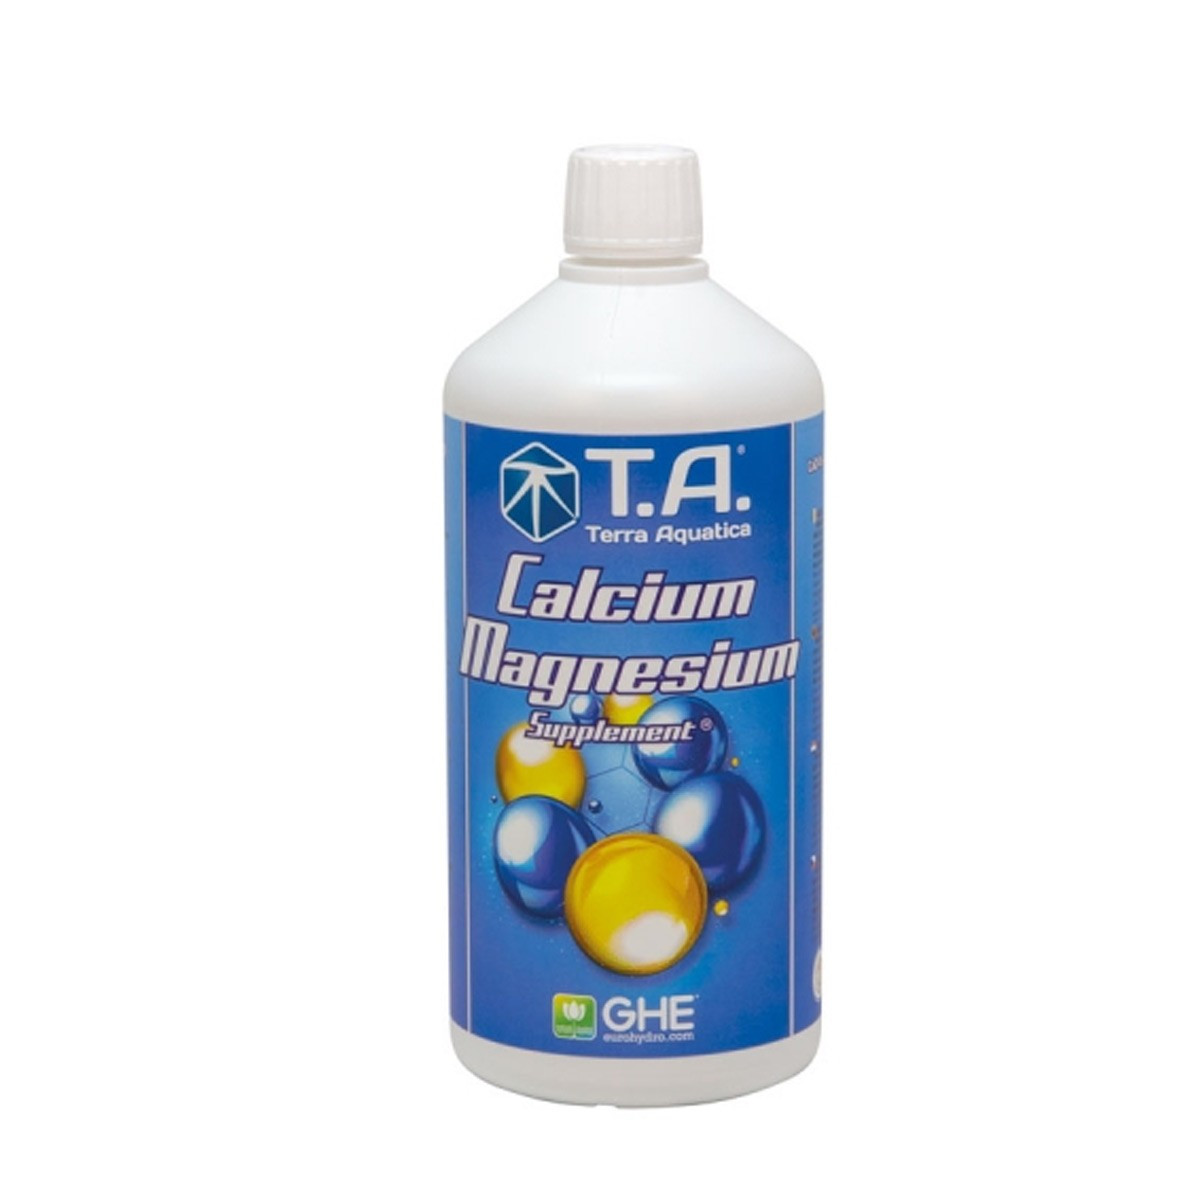 Magnésium et Calcium supplément - 1l - Terra Aquatica GHE - Terra Aquatica